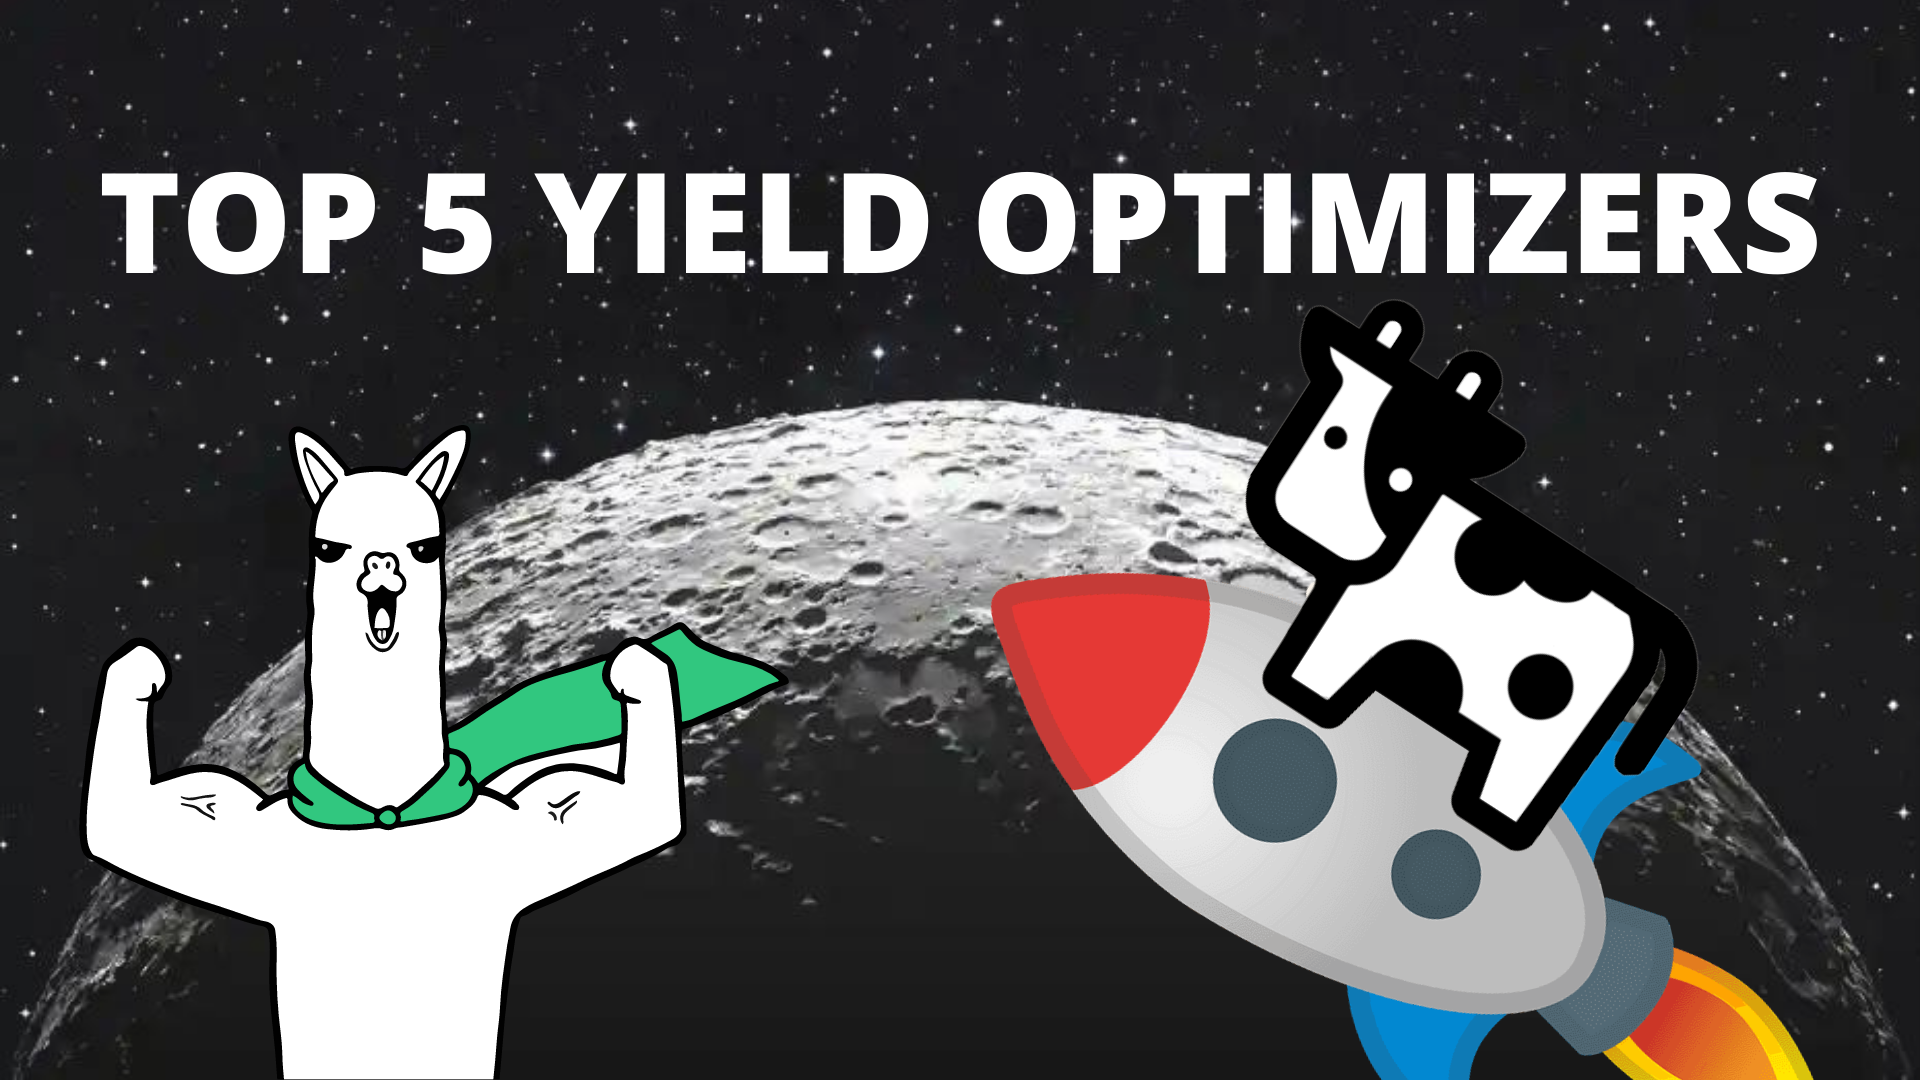 Top 5 Yield Optimizers